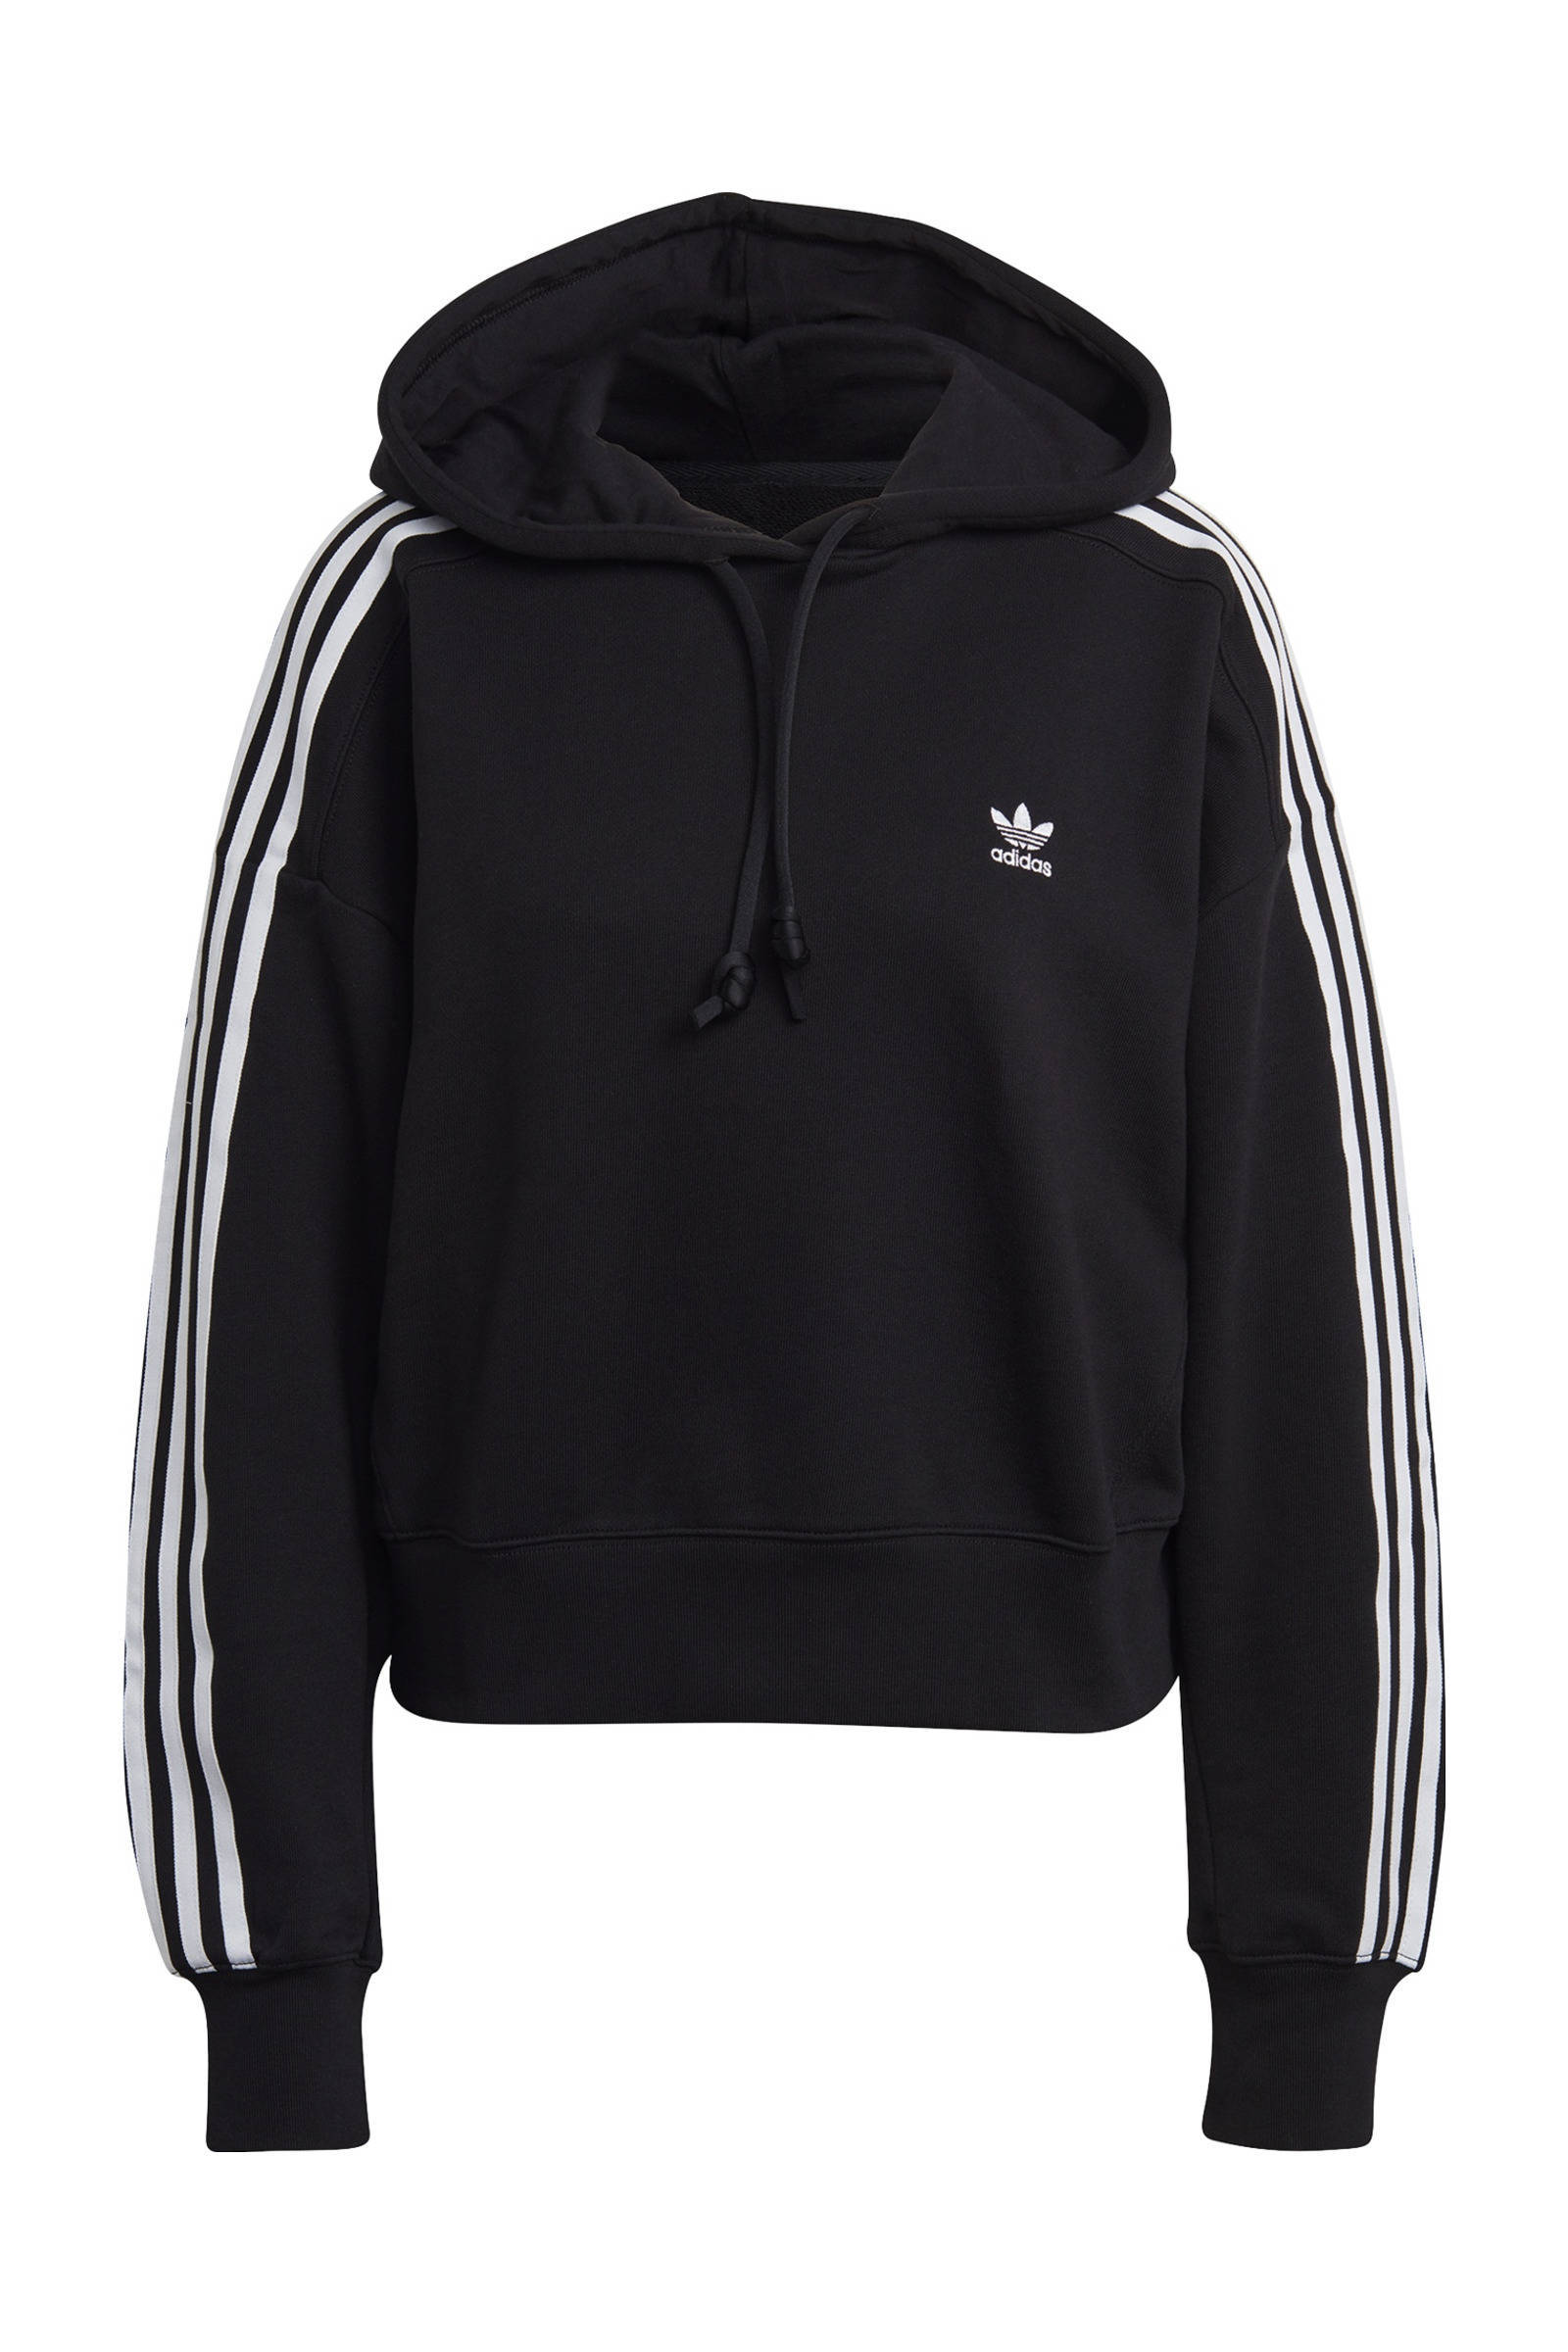 Adidas 3Stripes Crop Over The Head Dames Hoodies Black 100% Katoen online kopen